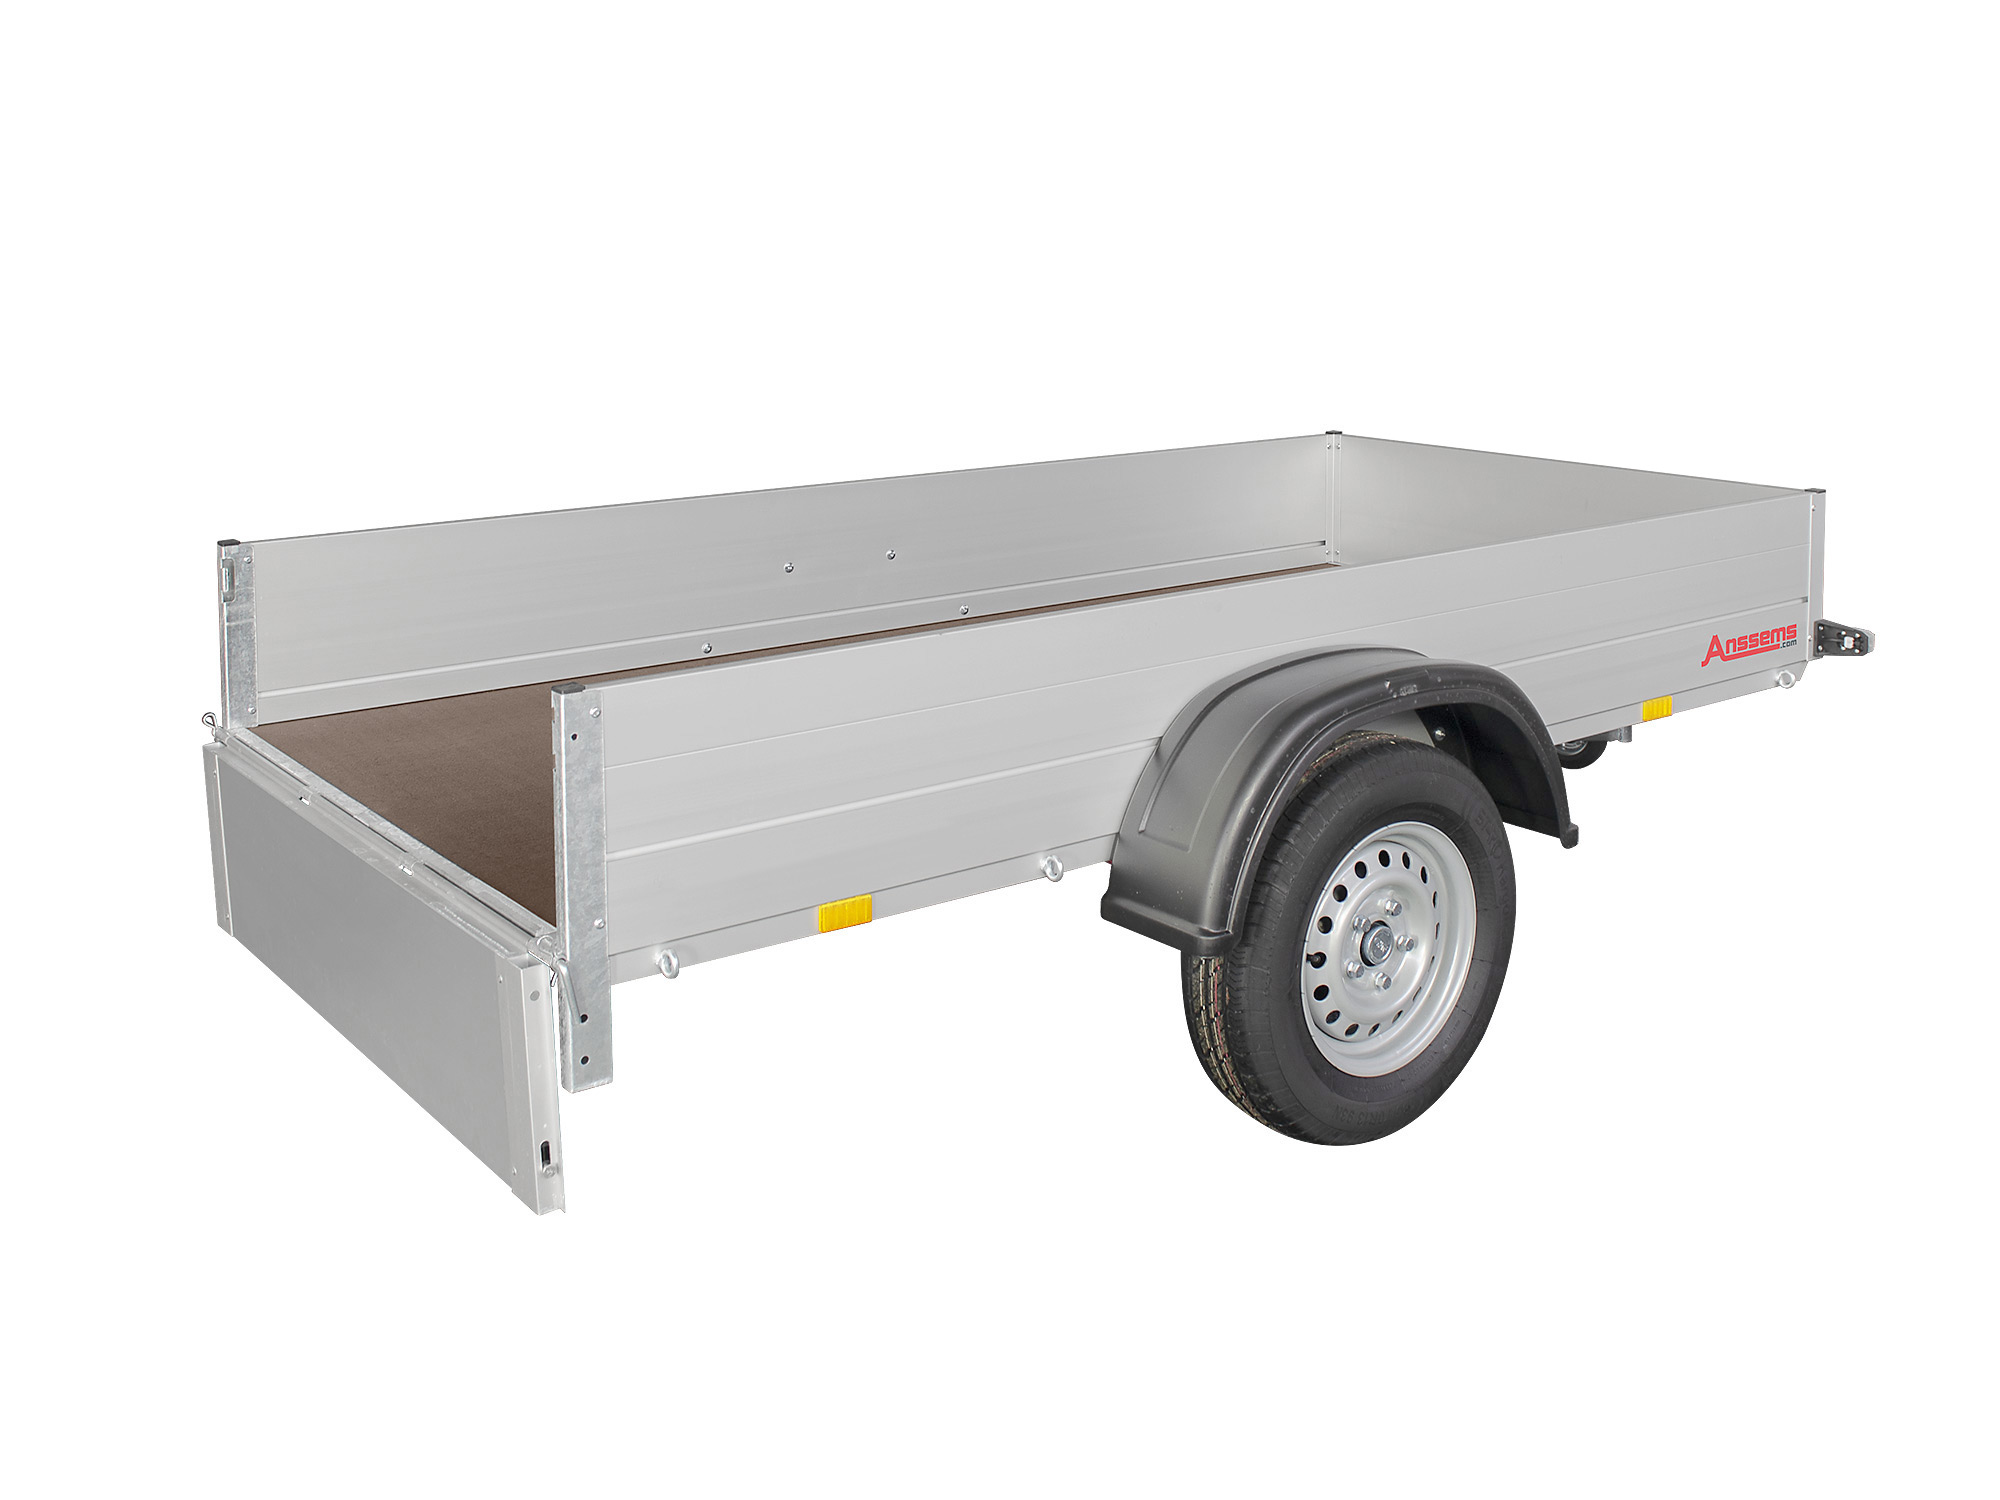 Anssems PKW Anhänger Tieflader Alu 500 kg, Ladefläche 1,81 x1,01 m